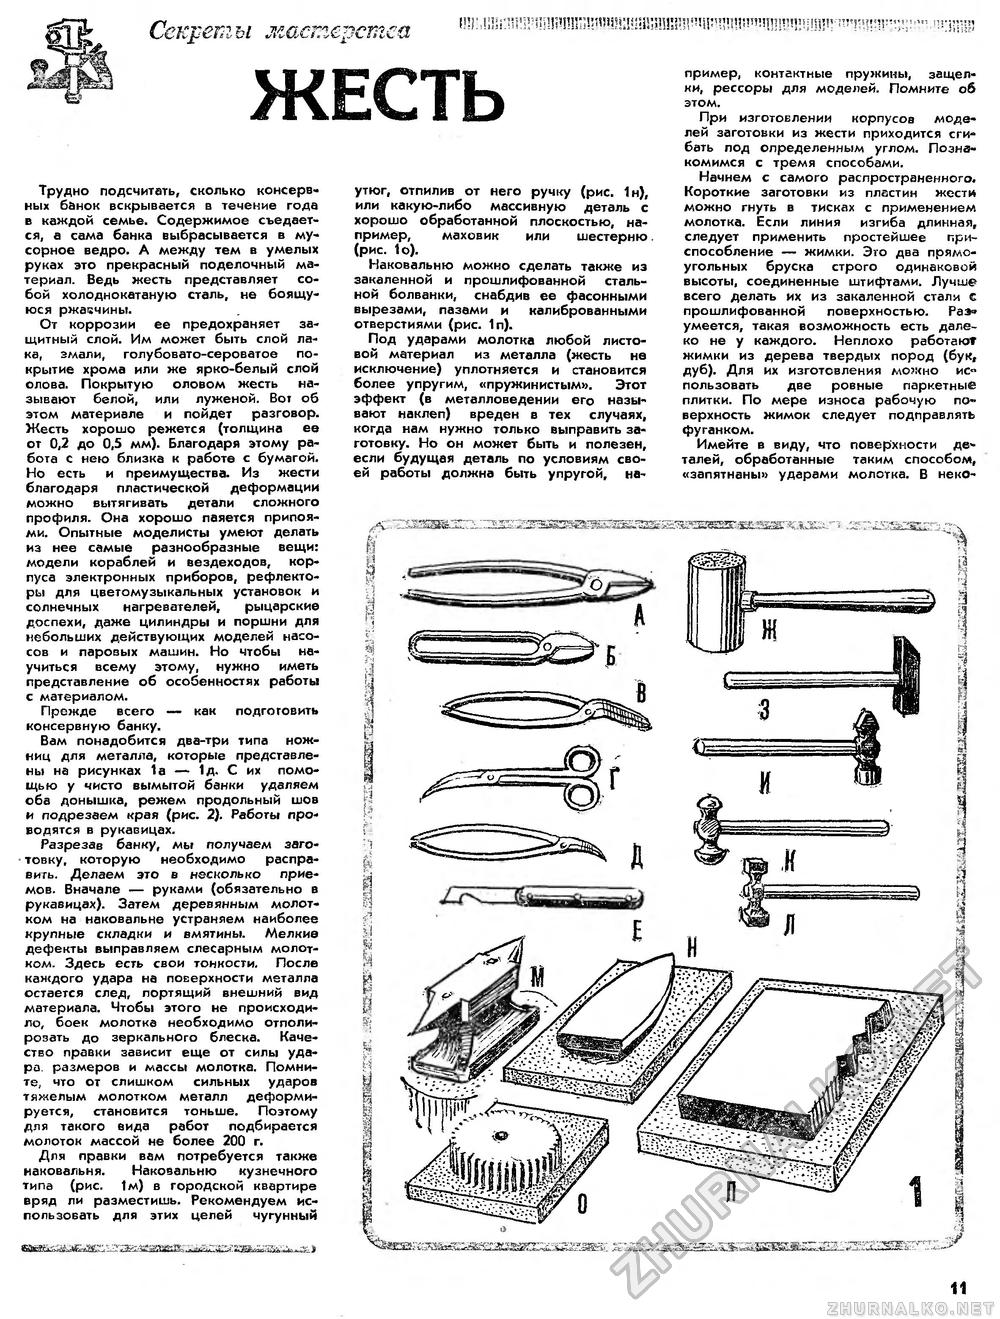 Юный техник - для умелых рук 1986-10, страница 11